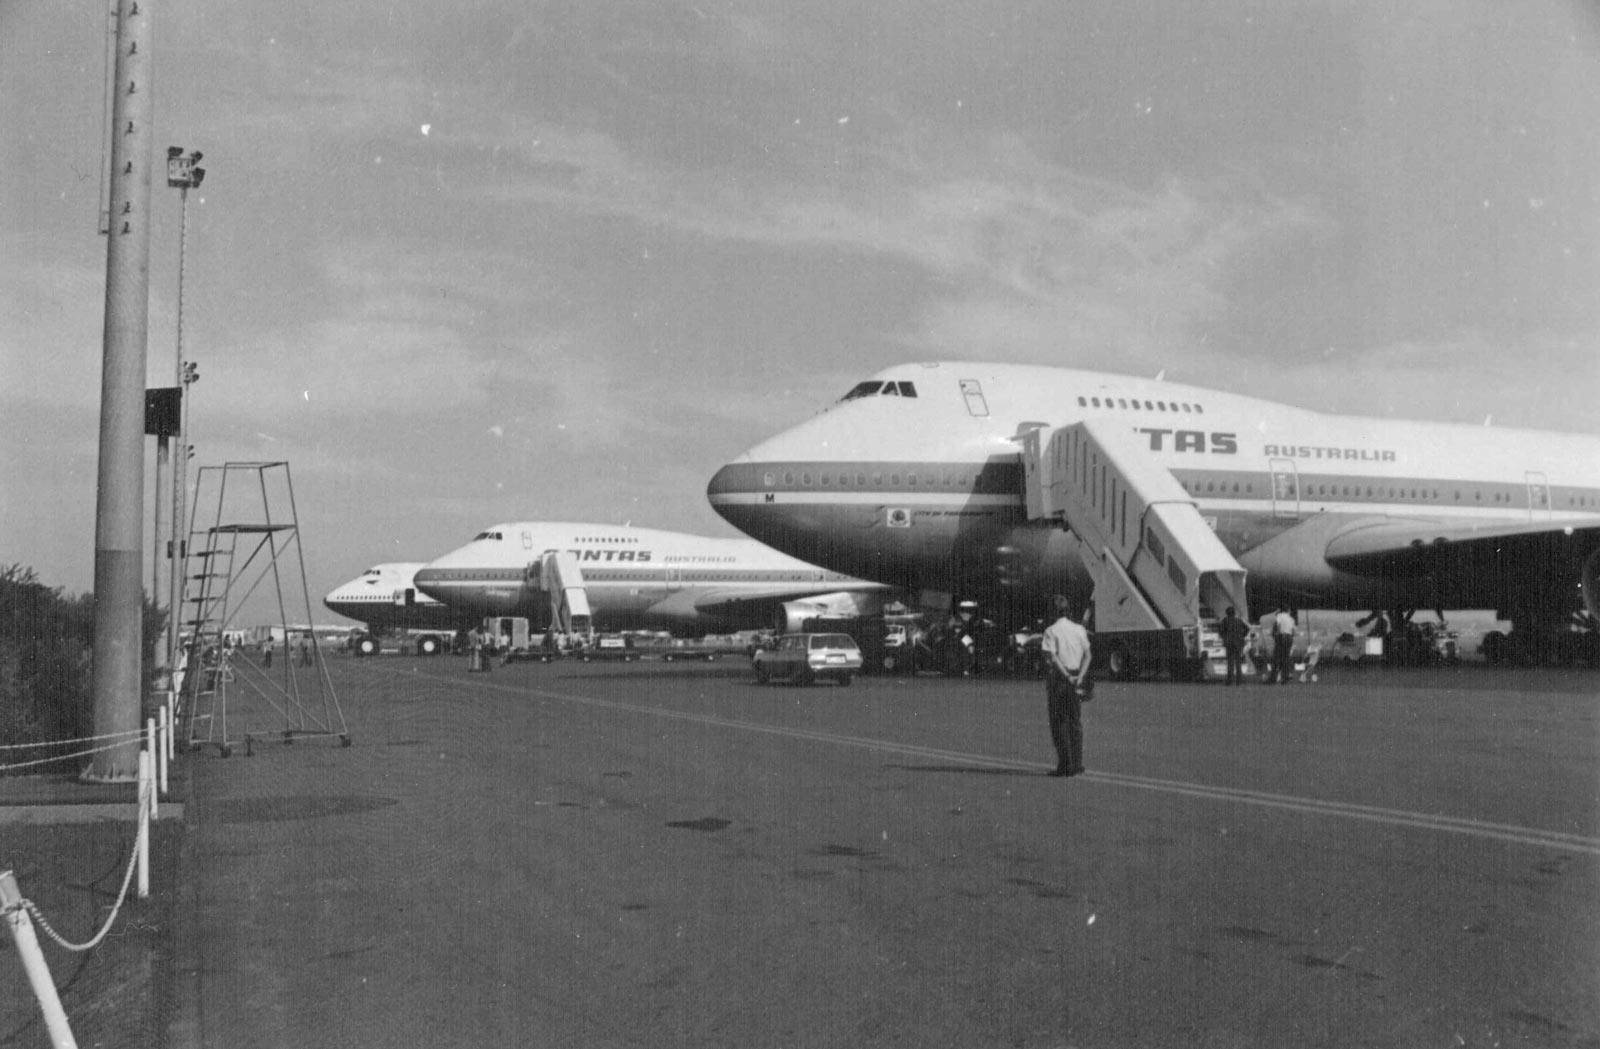 Qantas aircraft at old Eagle Farm Airport in 1960s